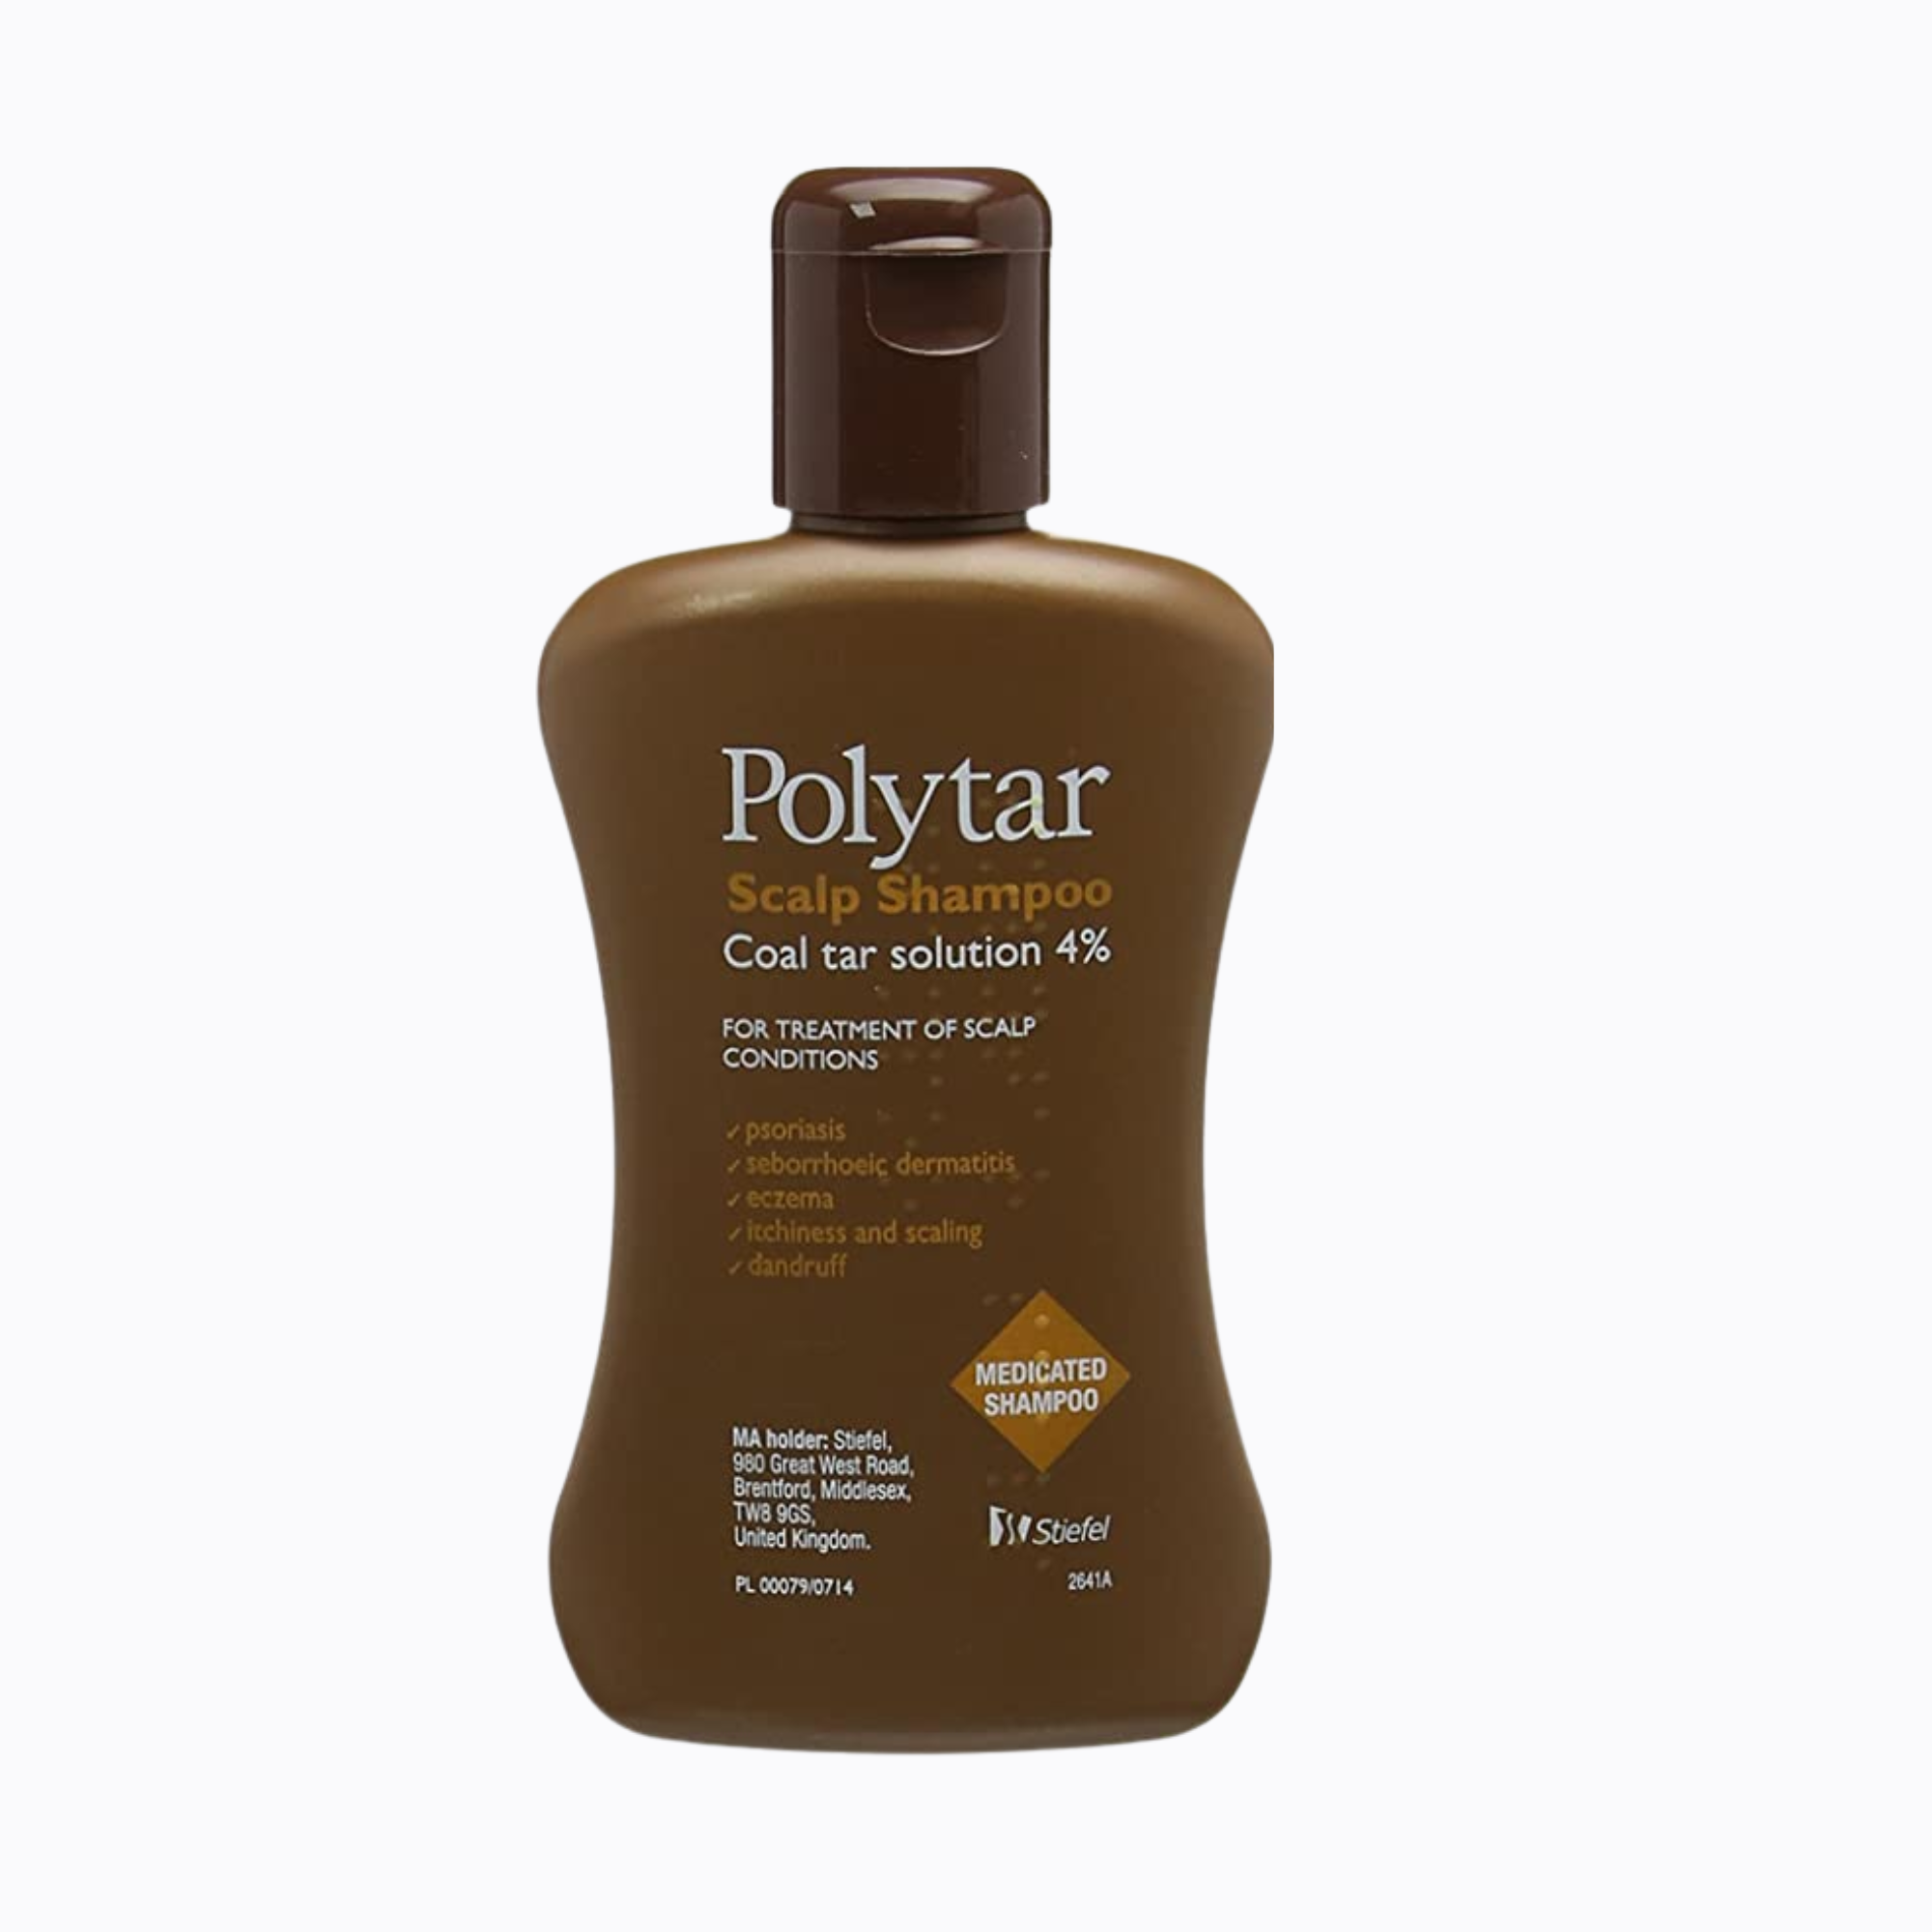 Polytar Scalp Shampoo Psoriasis Eczema Itchiness Coal Tar 4%-150ml